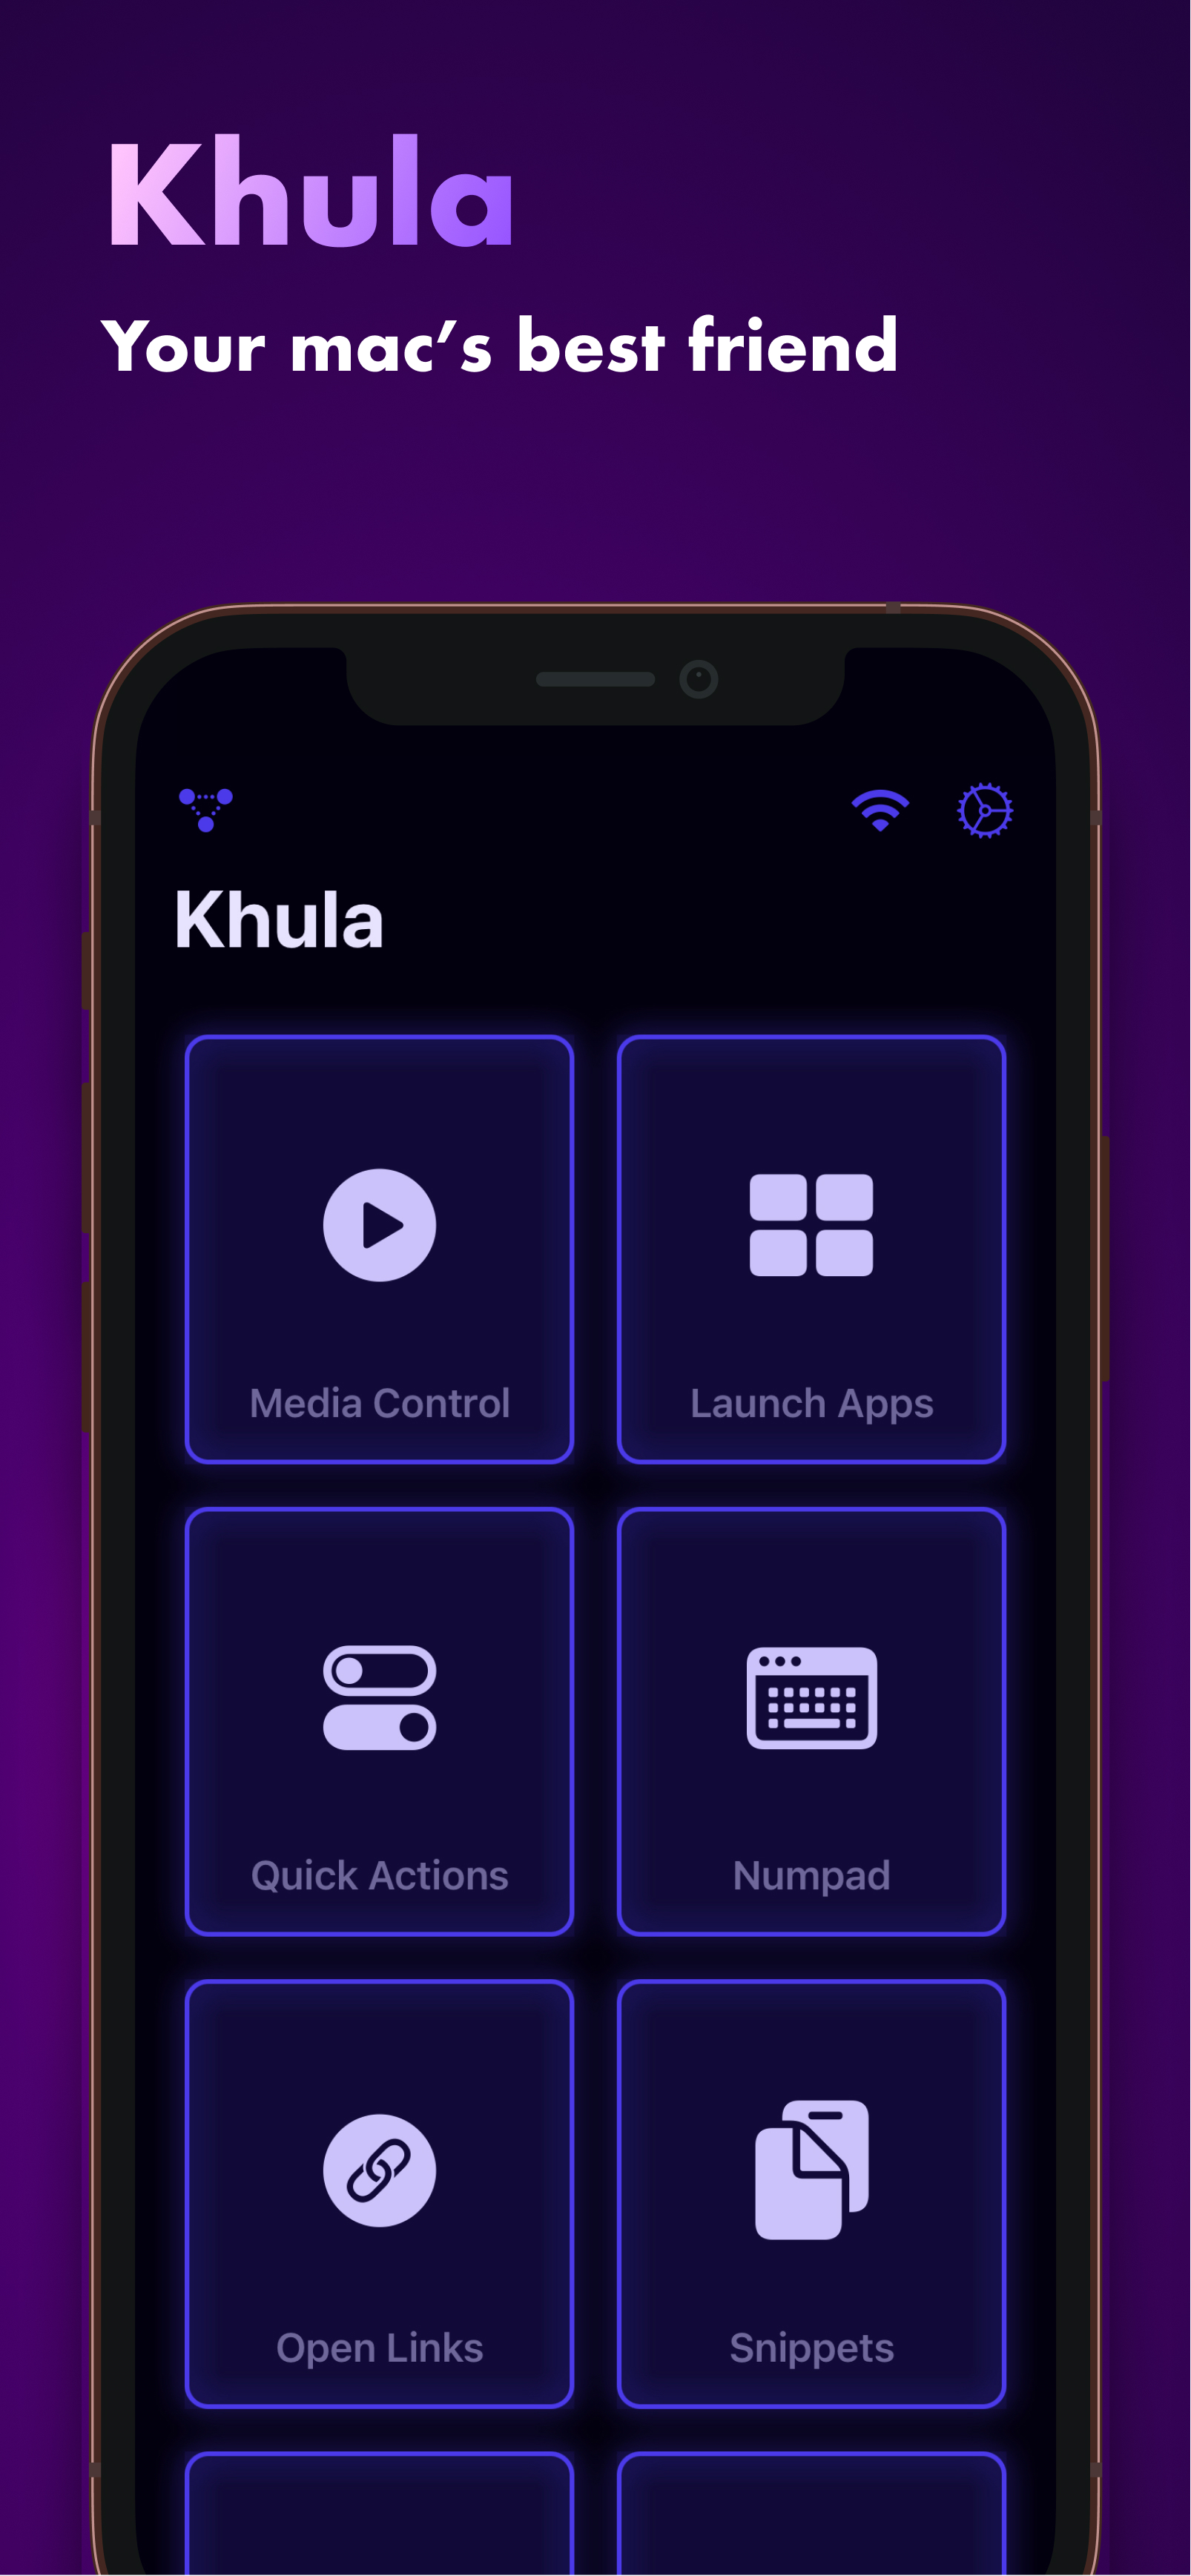 Khula iOS app Main View.